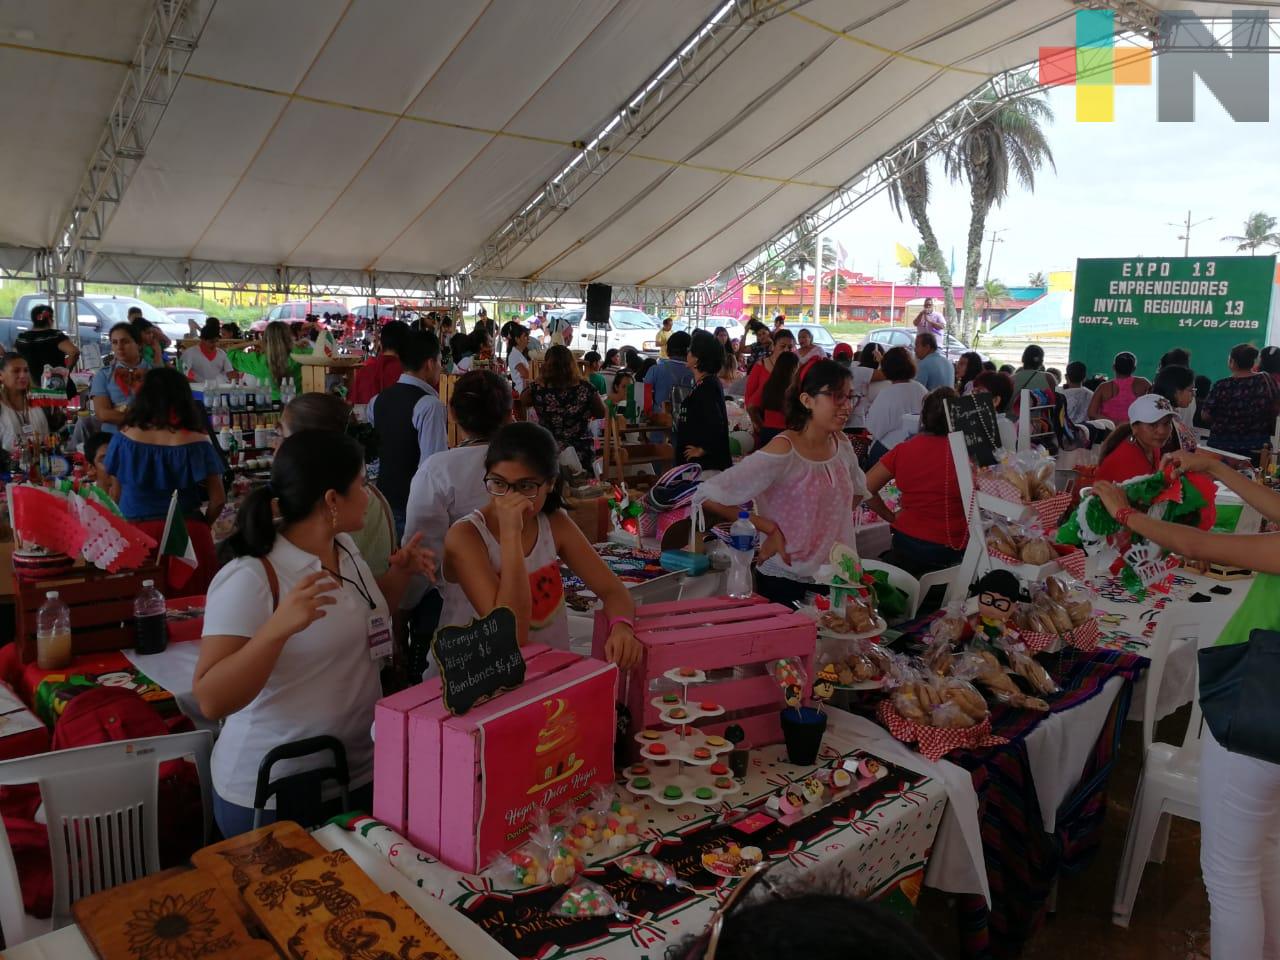 Celebran Expo emprendedores con más de 100 comerciantes de la región sur de Veracruz